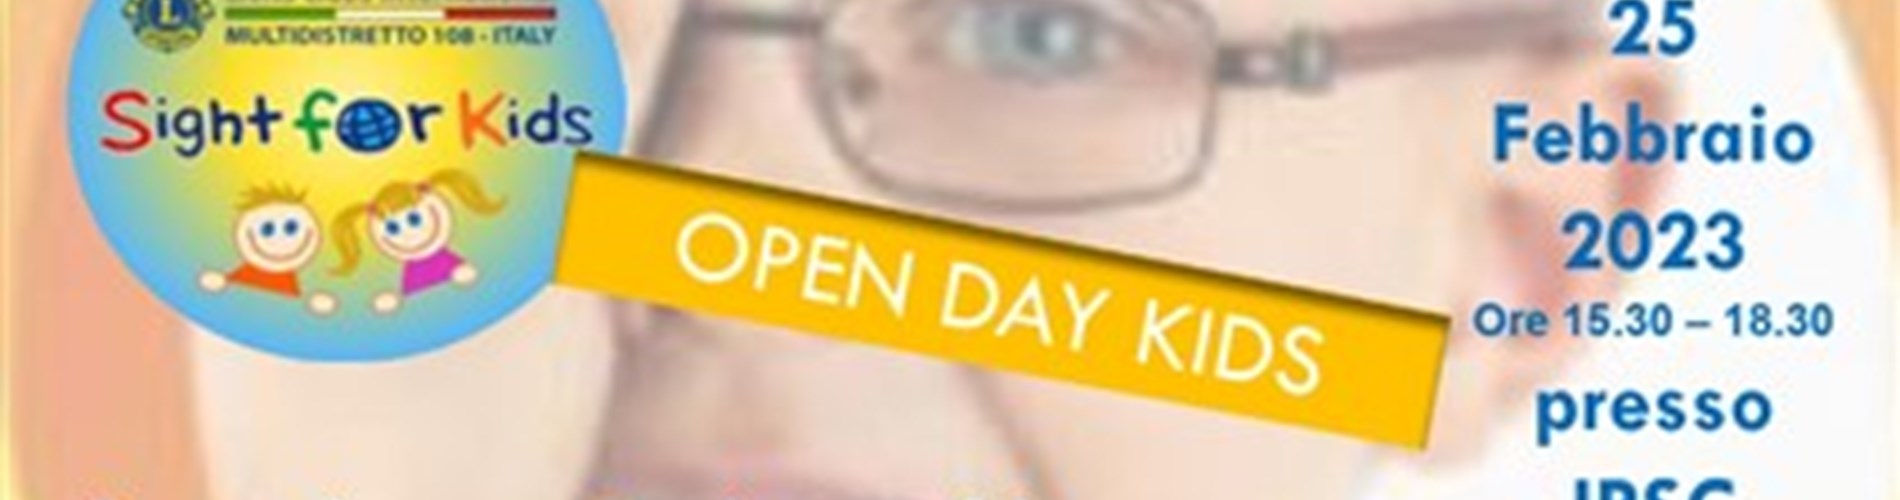 "Open day Kids"